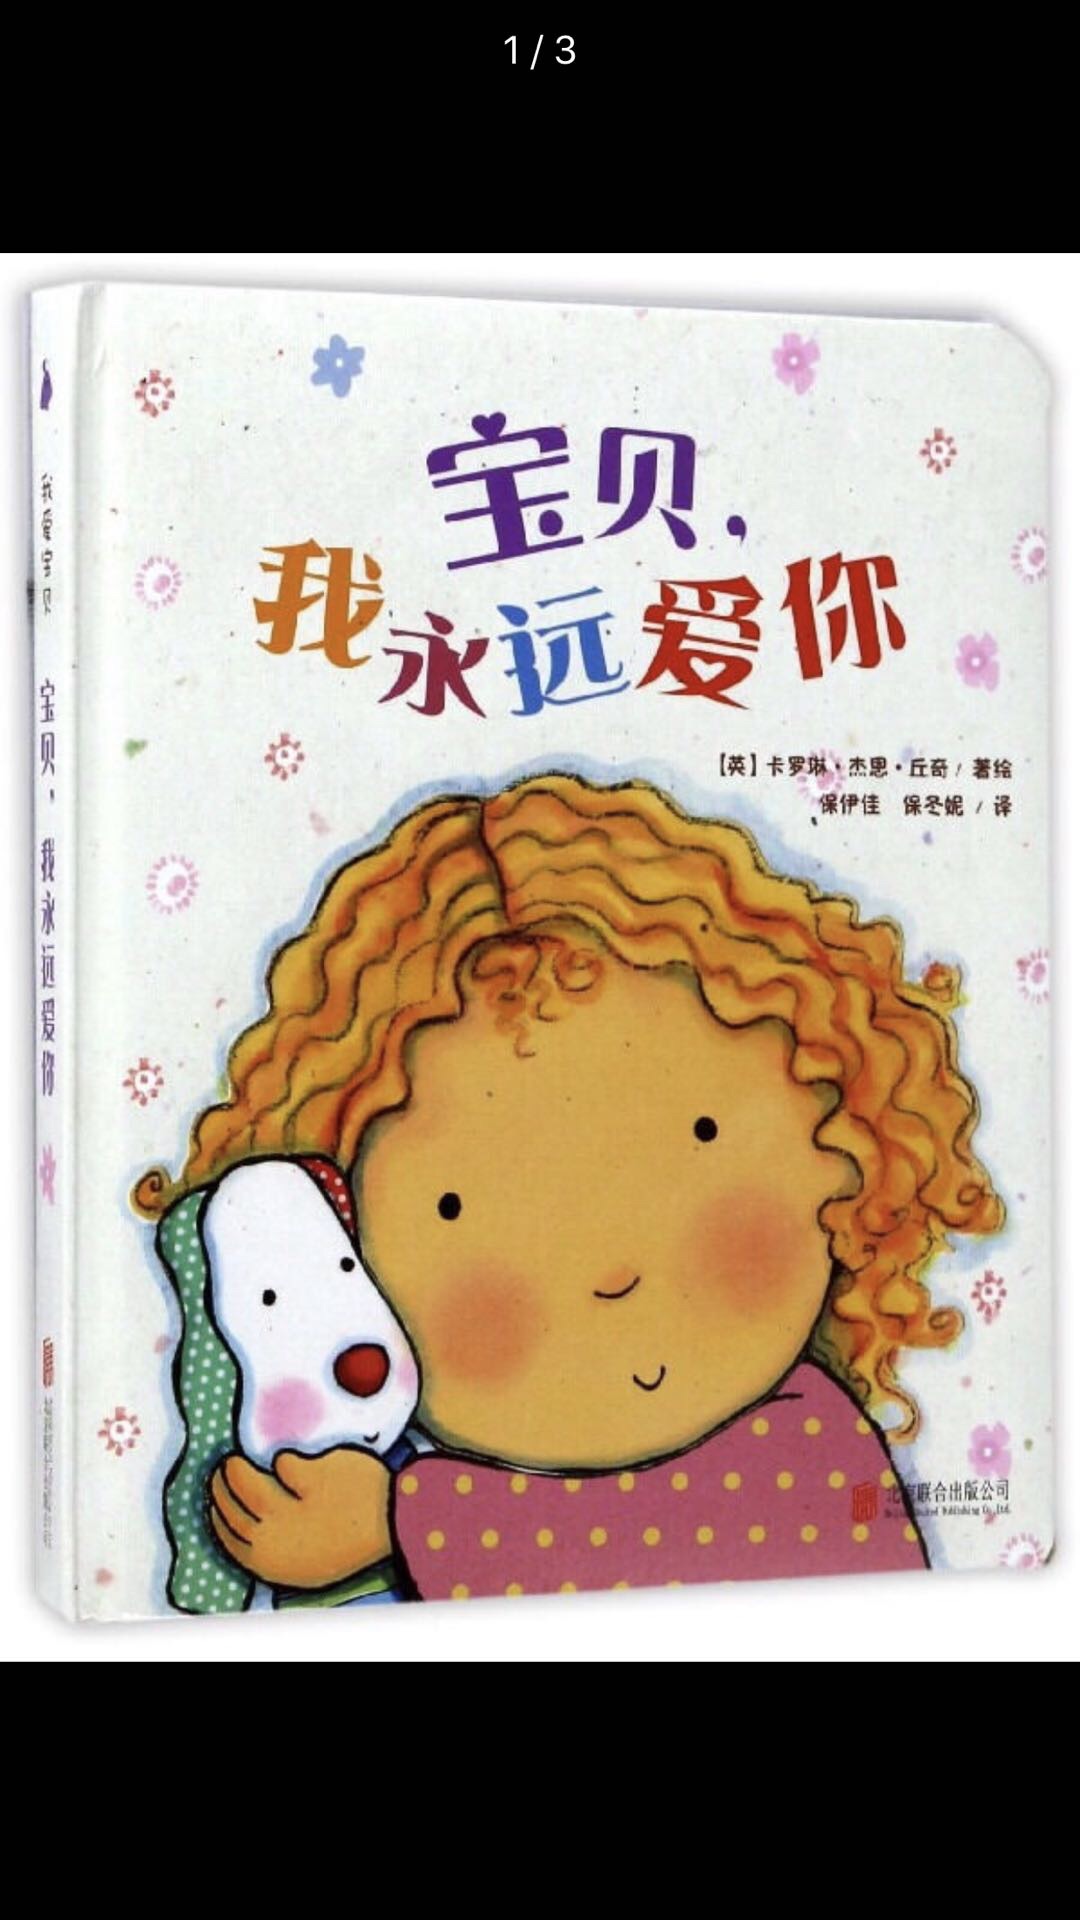 内容适合小宝宝，不过印刷让人无法认可啦，希望中国图书商在优惠的同时多多用心咯。